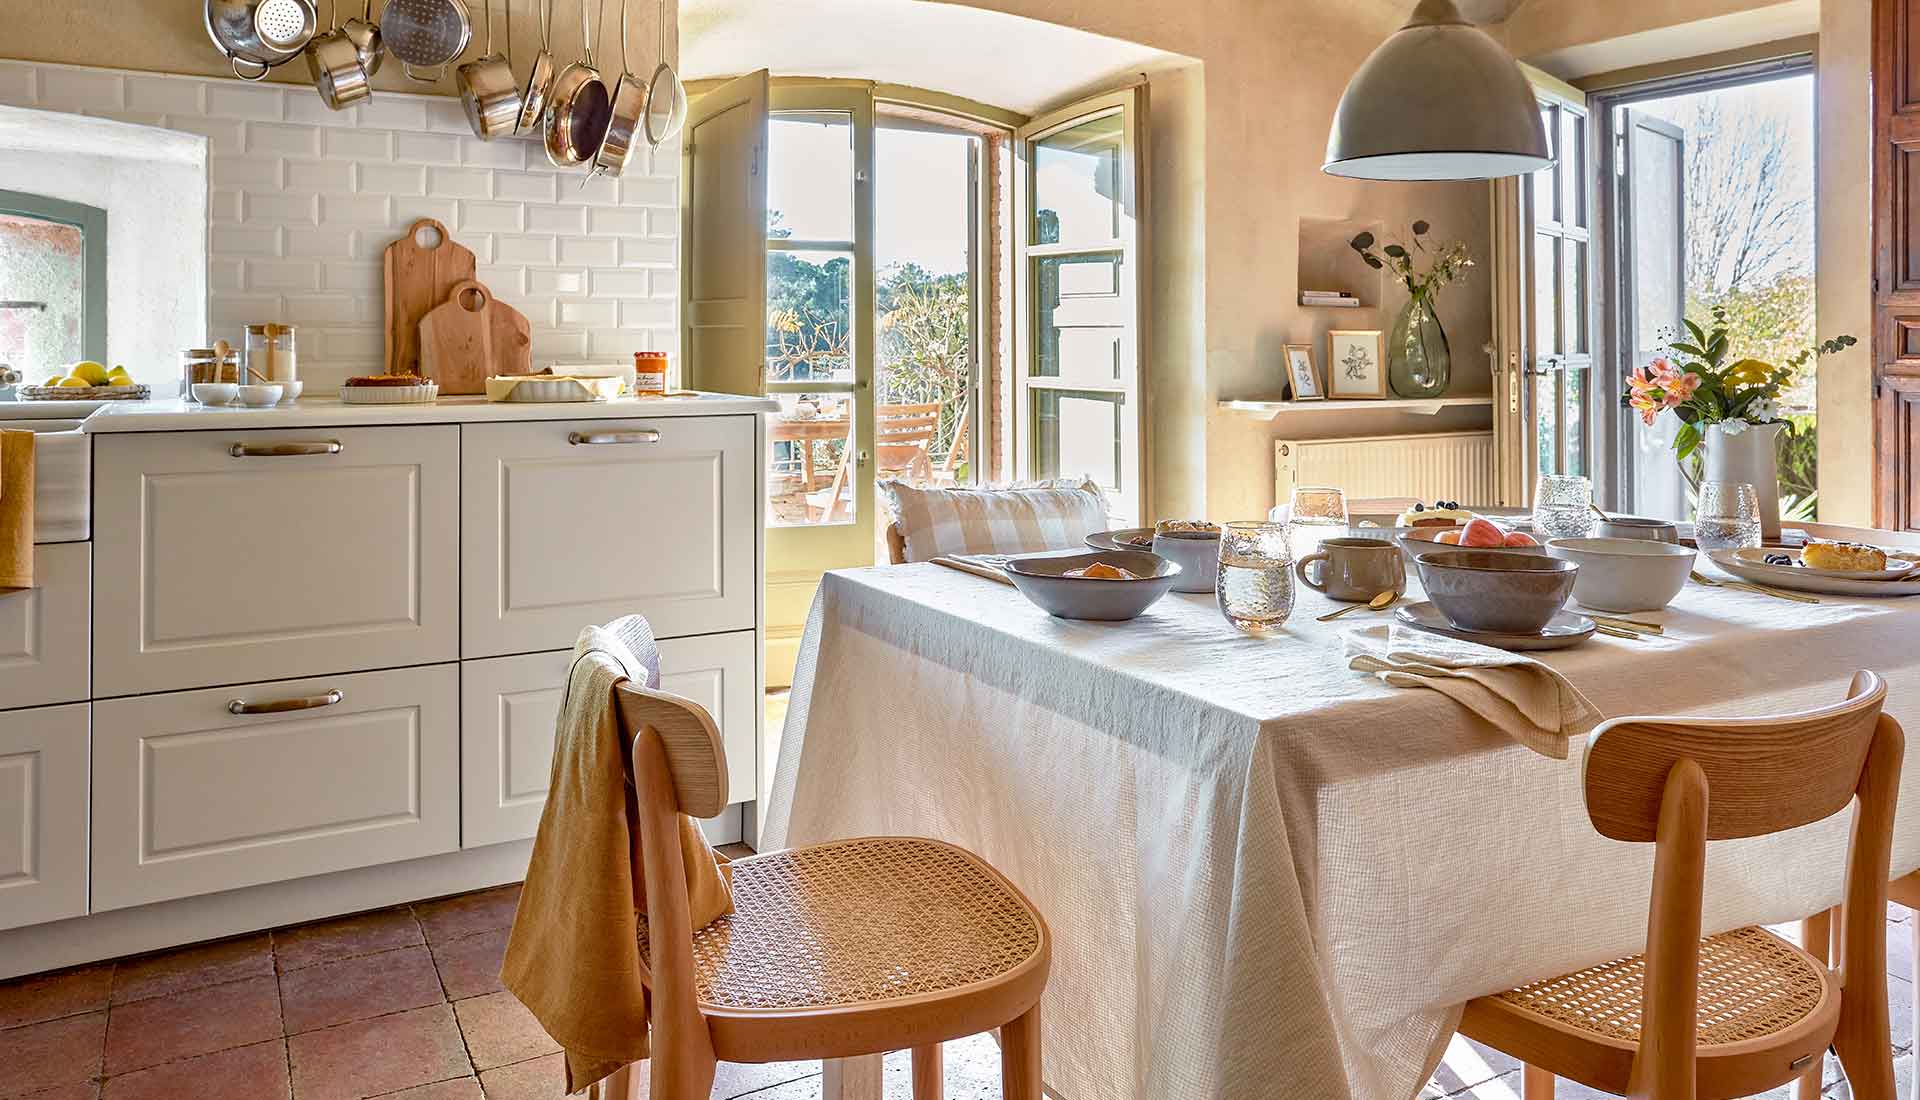 vepsalainen_kave_home_moderni_maalaisromanttinen_sisustus_keittio_modern_romantic_decor_kitchen.jpg